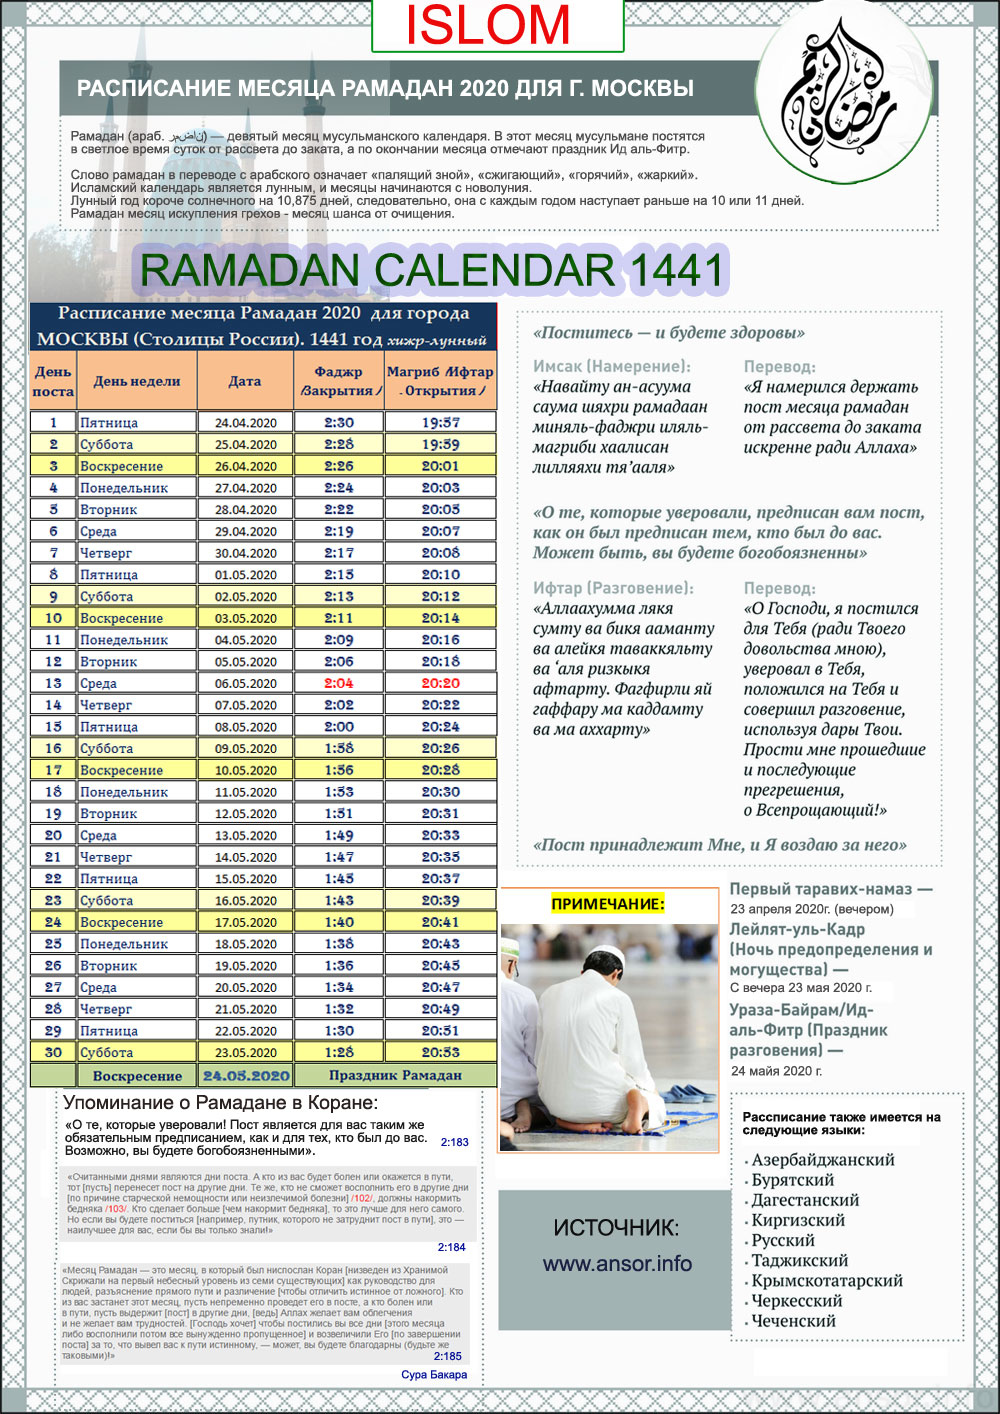 Точное расписание приема пищи в пост Рамадан в 2020 году